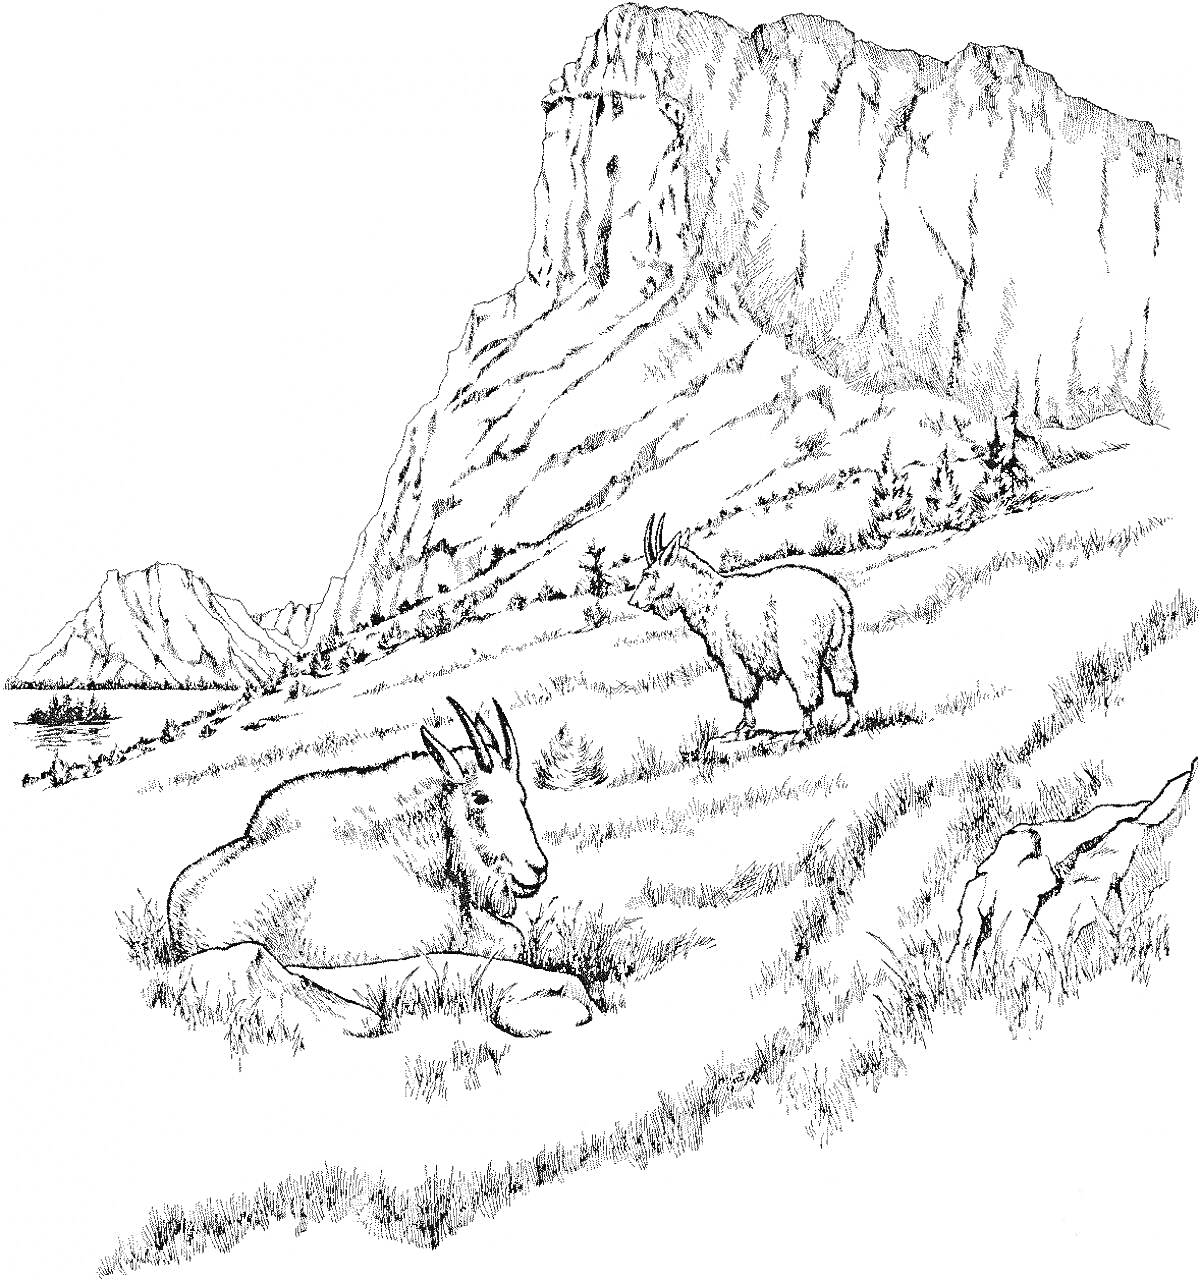 Горный пейзаж с двумя козами, крутой утес, холмы и растительность